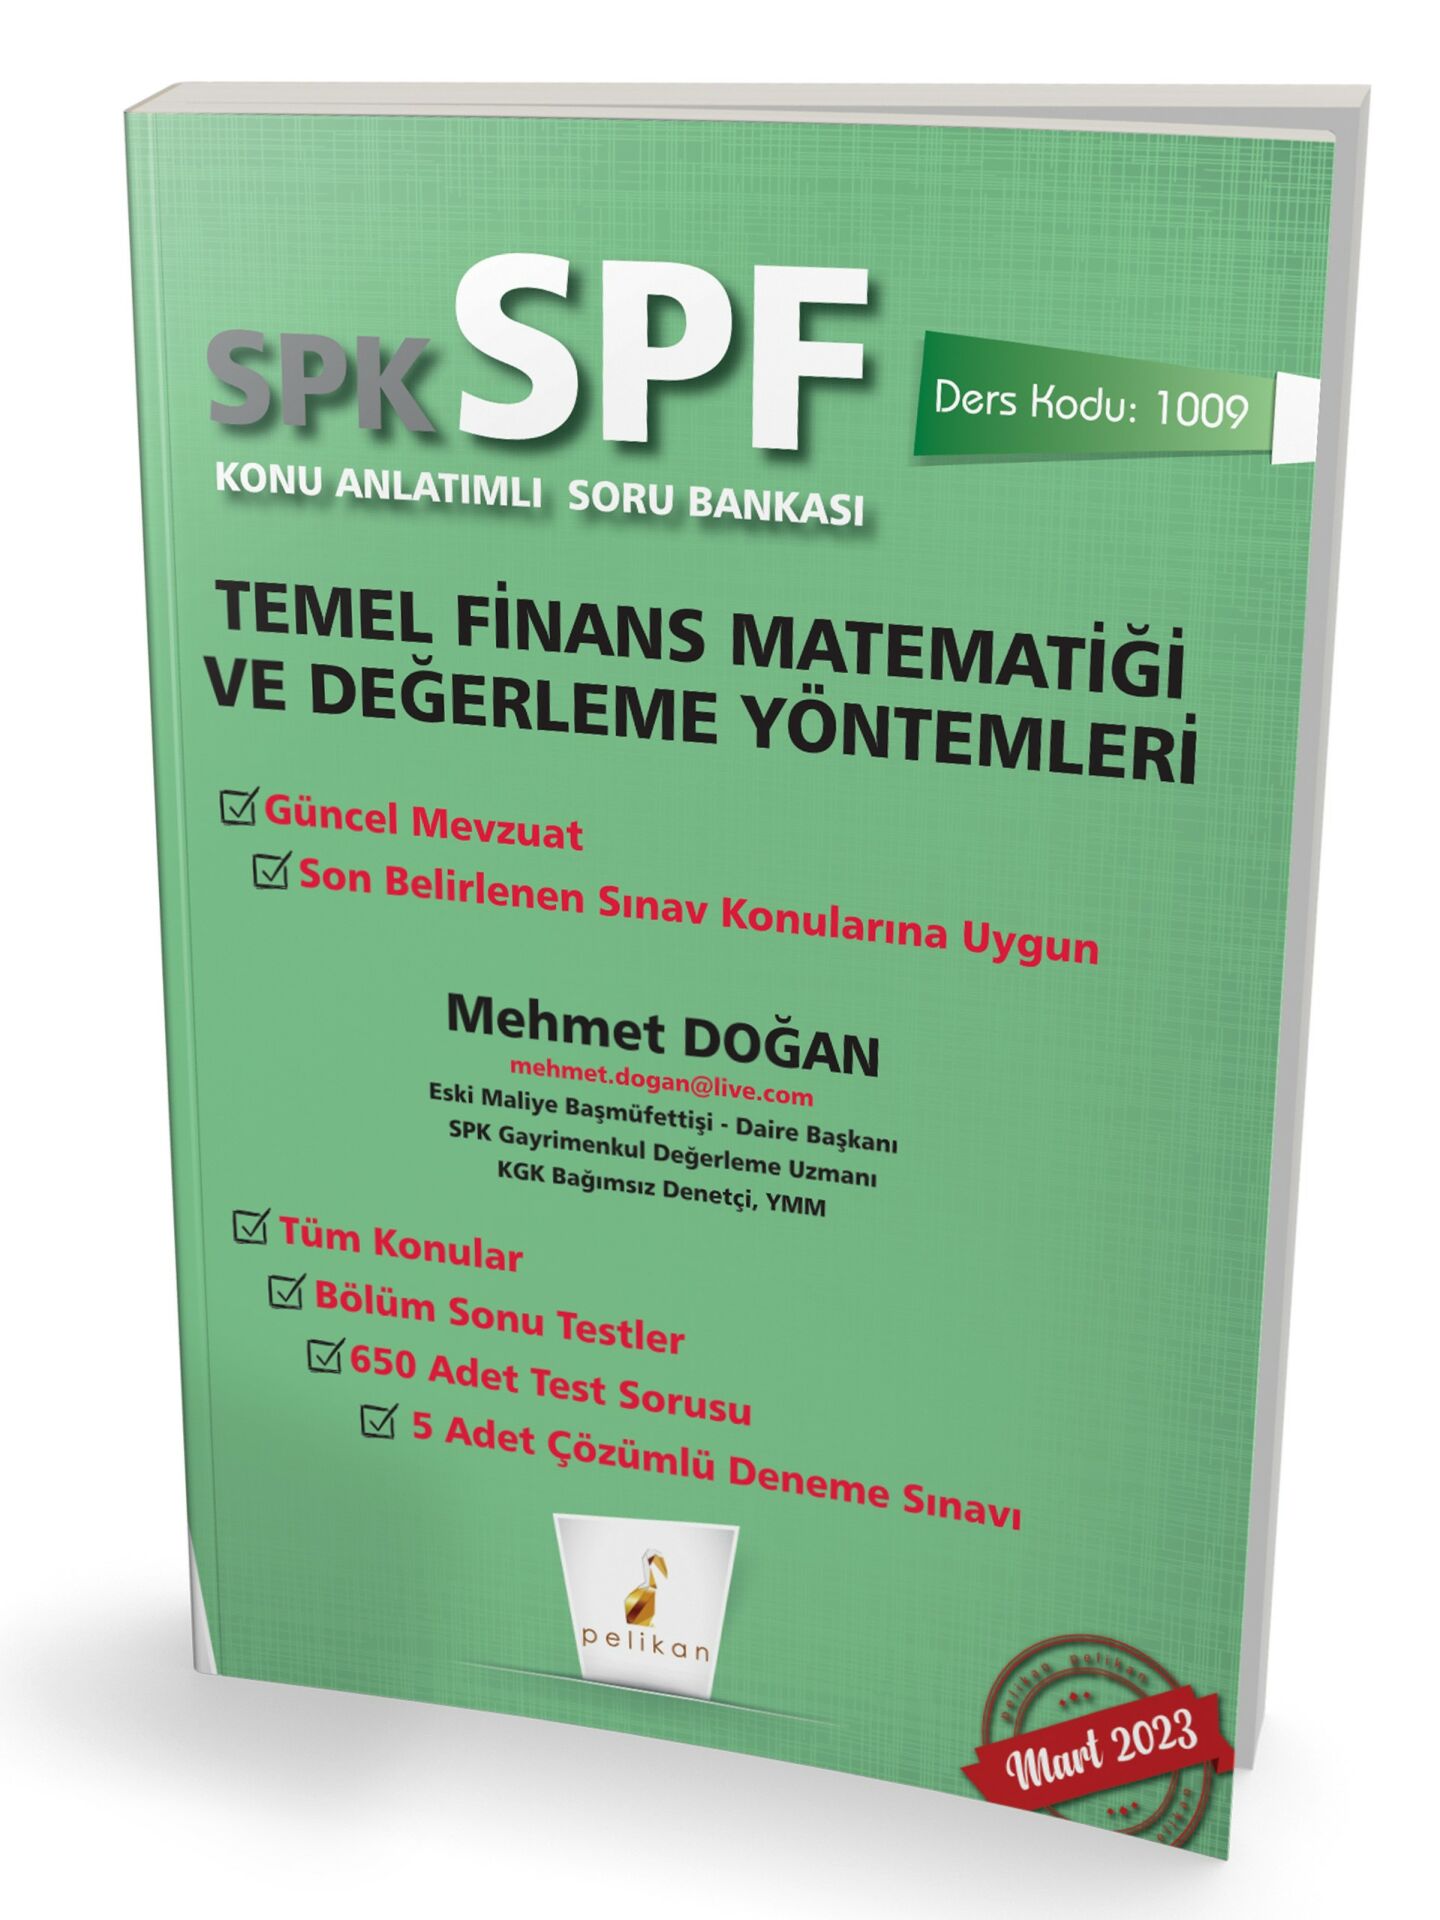 Pelikan SPK SPF 1009 Temel Finans Matematiği ve Değerleme Yöntemleri Konu Anlatımlı Soru Bankası Pelikan Yayınevi